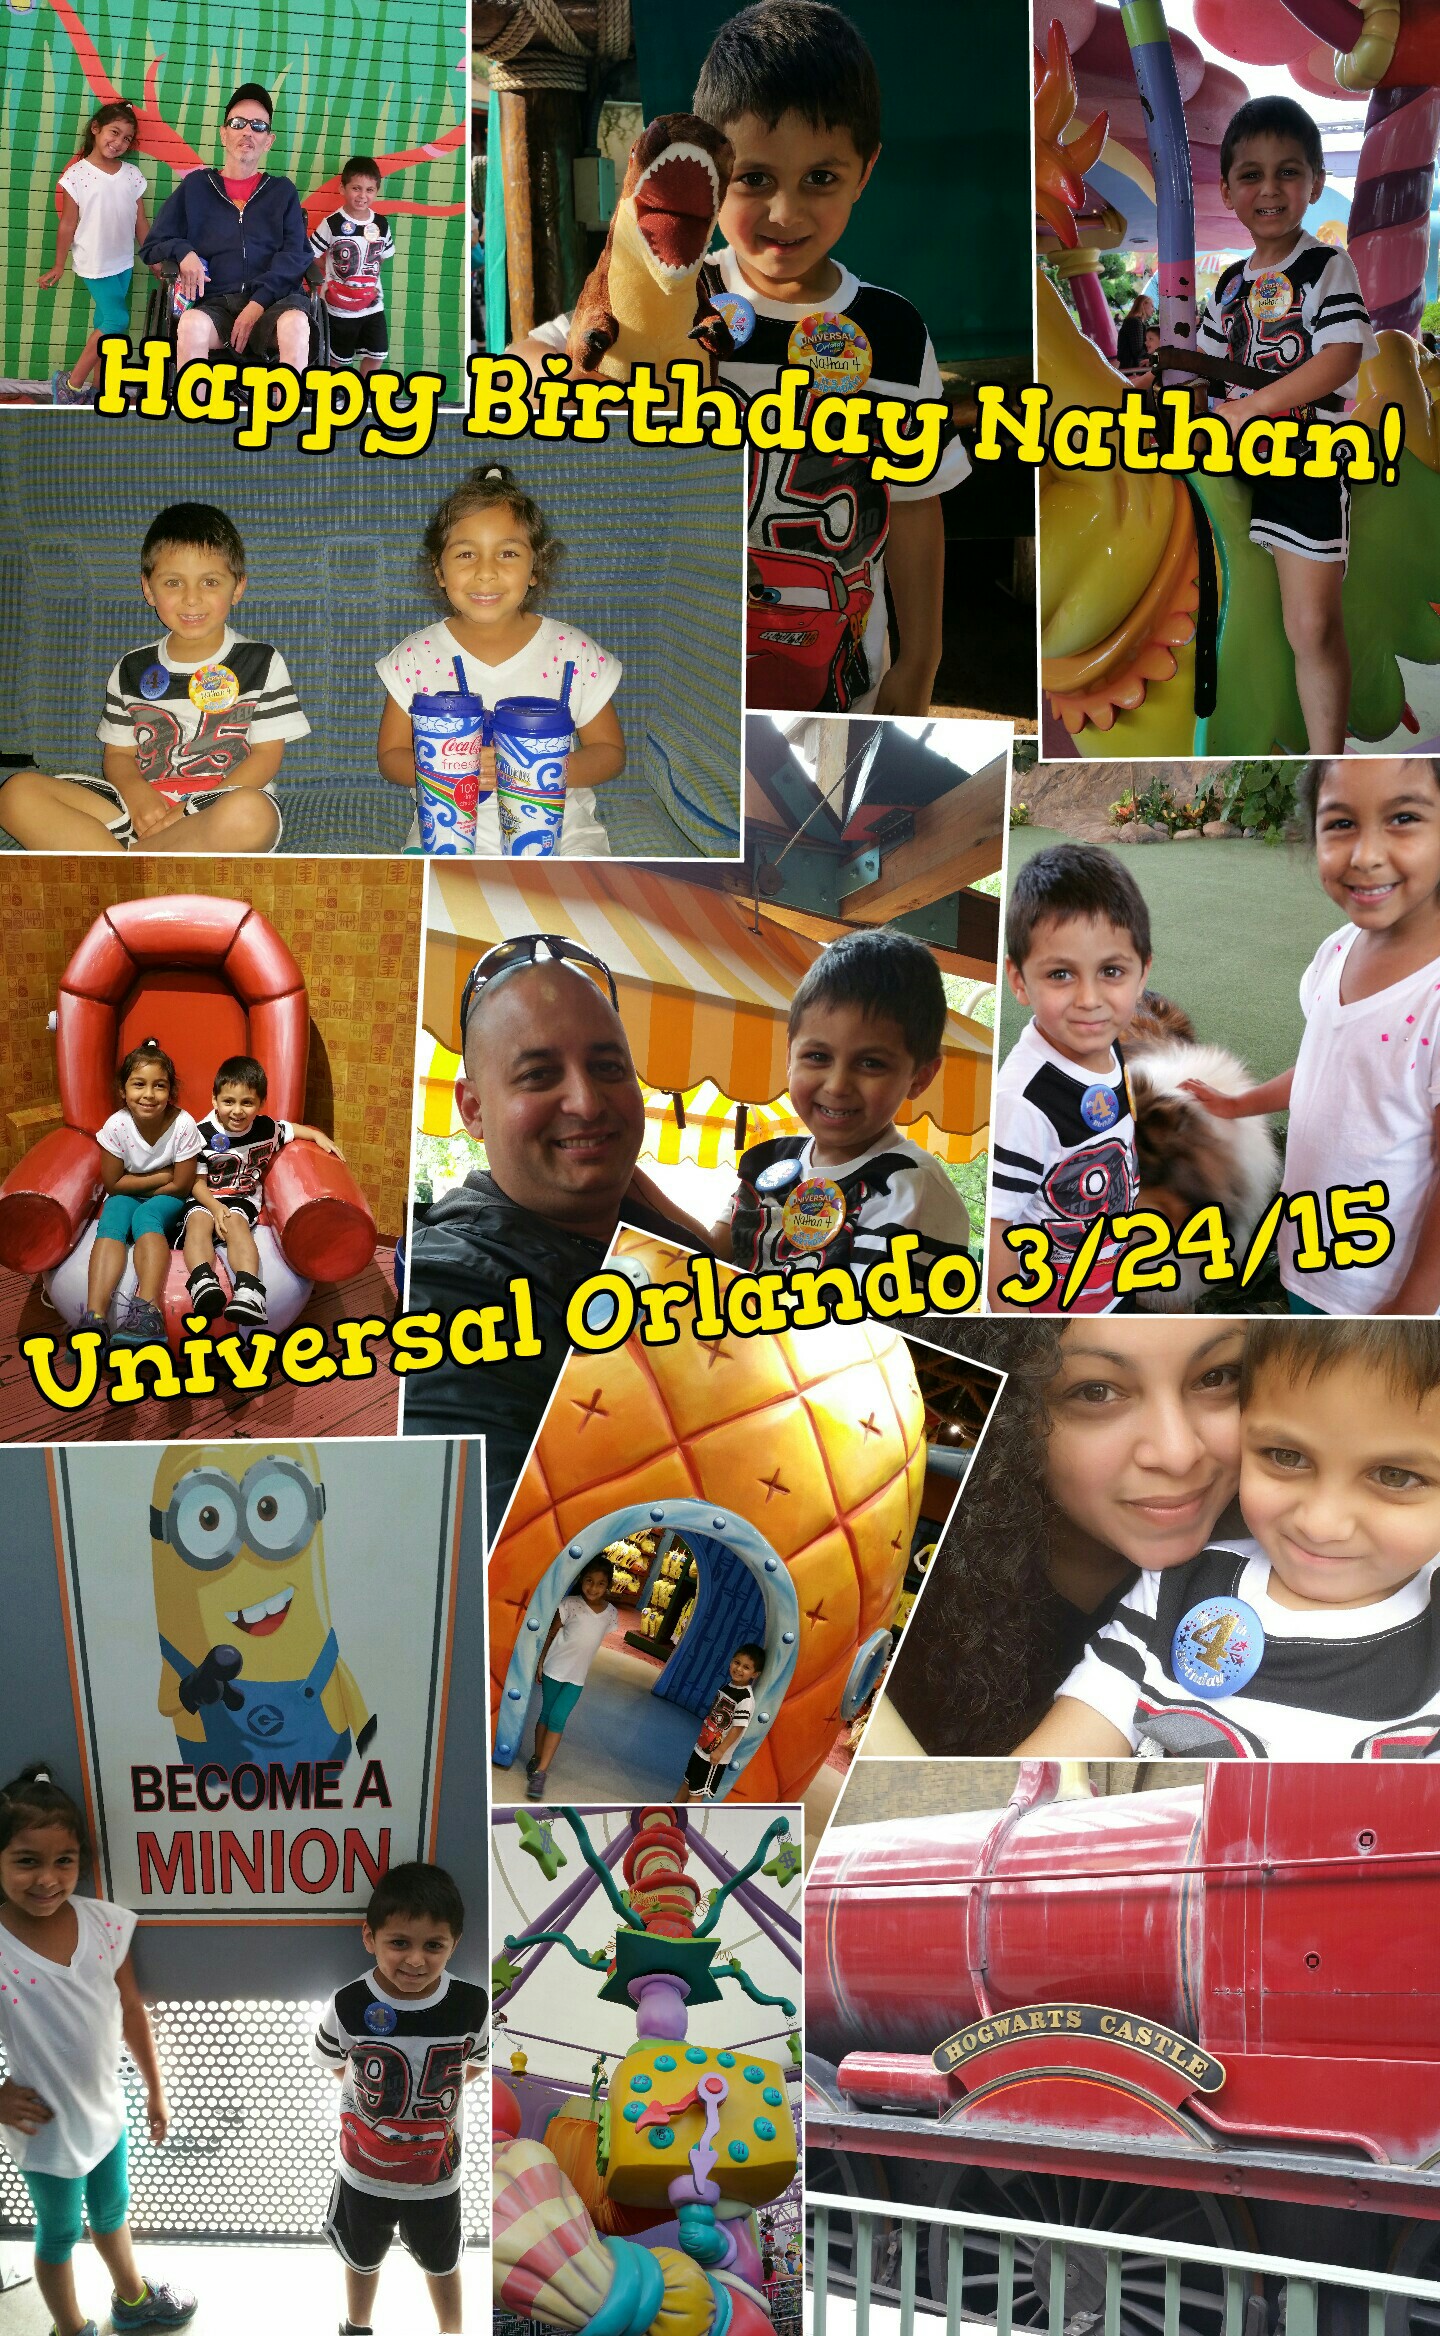 Universal Orlando 3/24/15
Fun, fun, fun for Nathan's 4th birthday. 